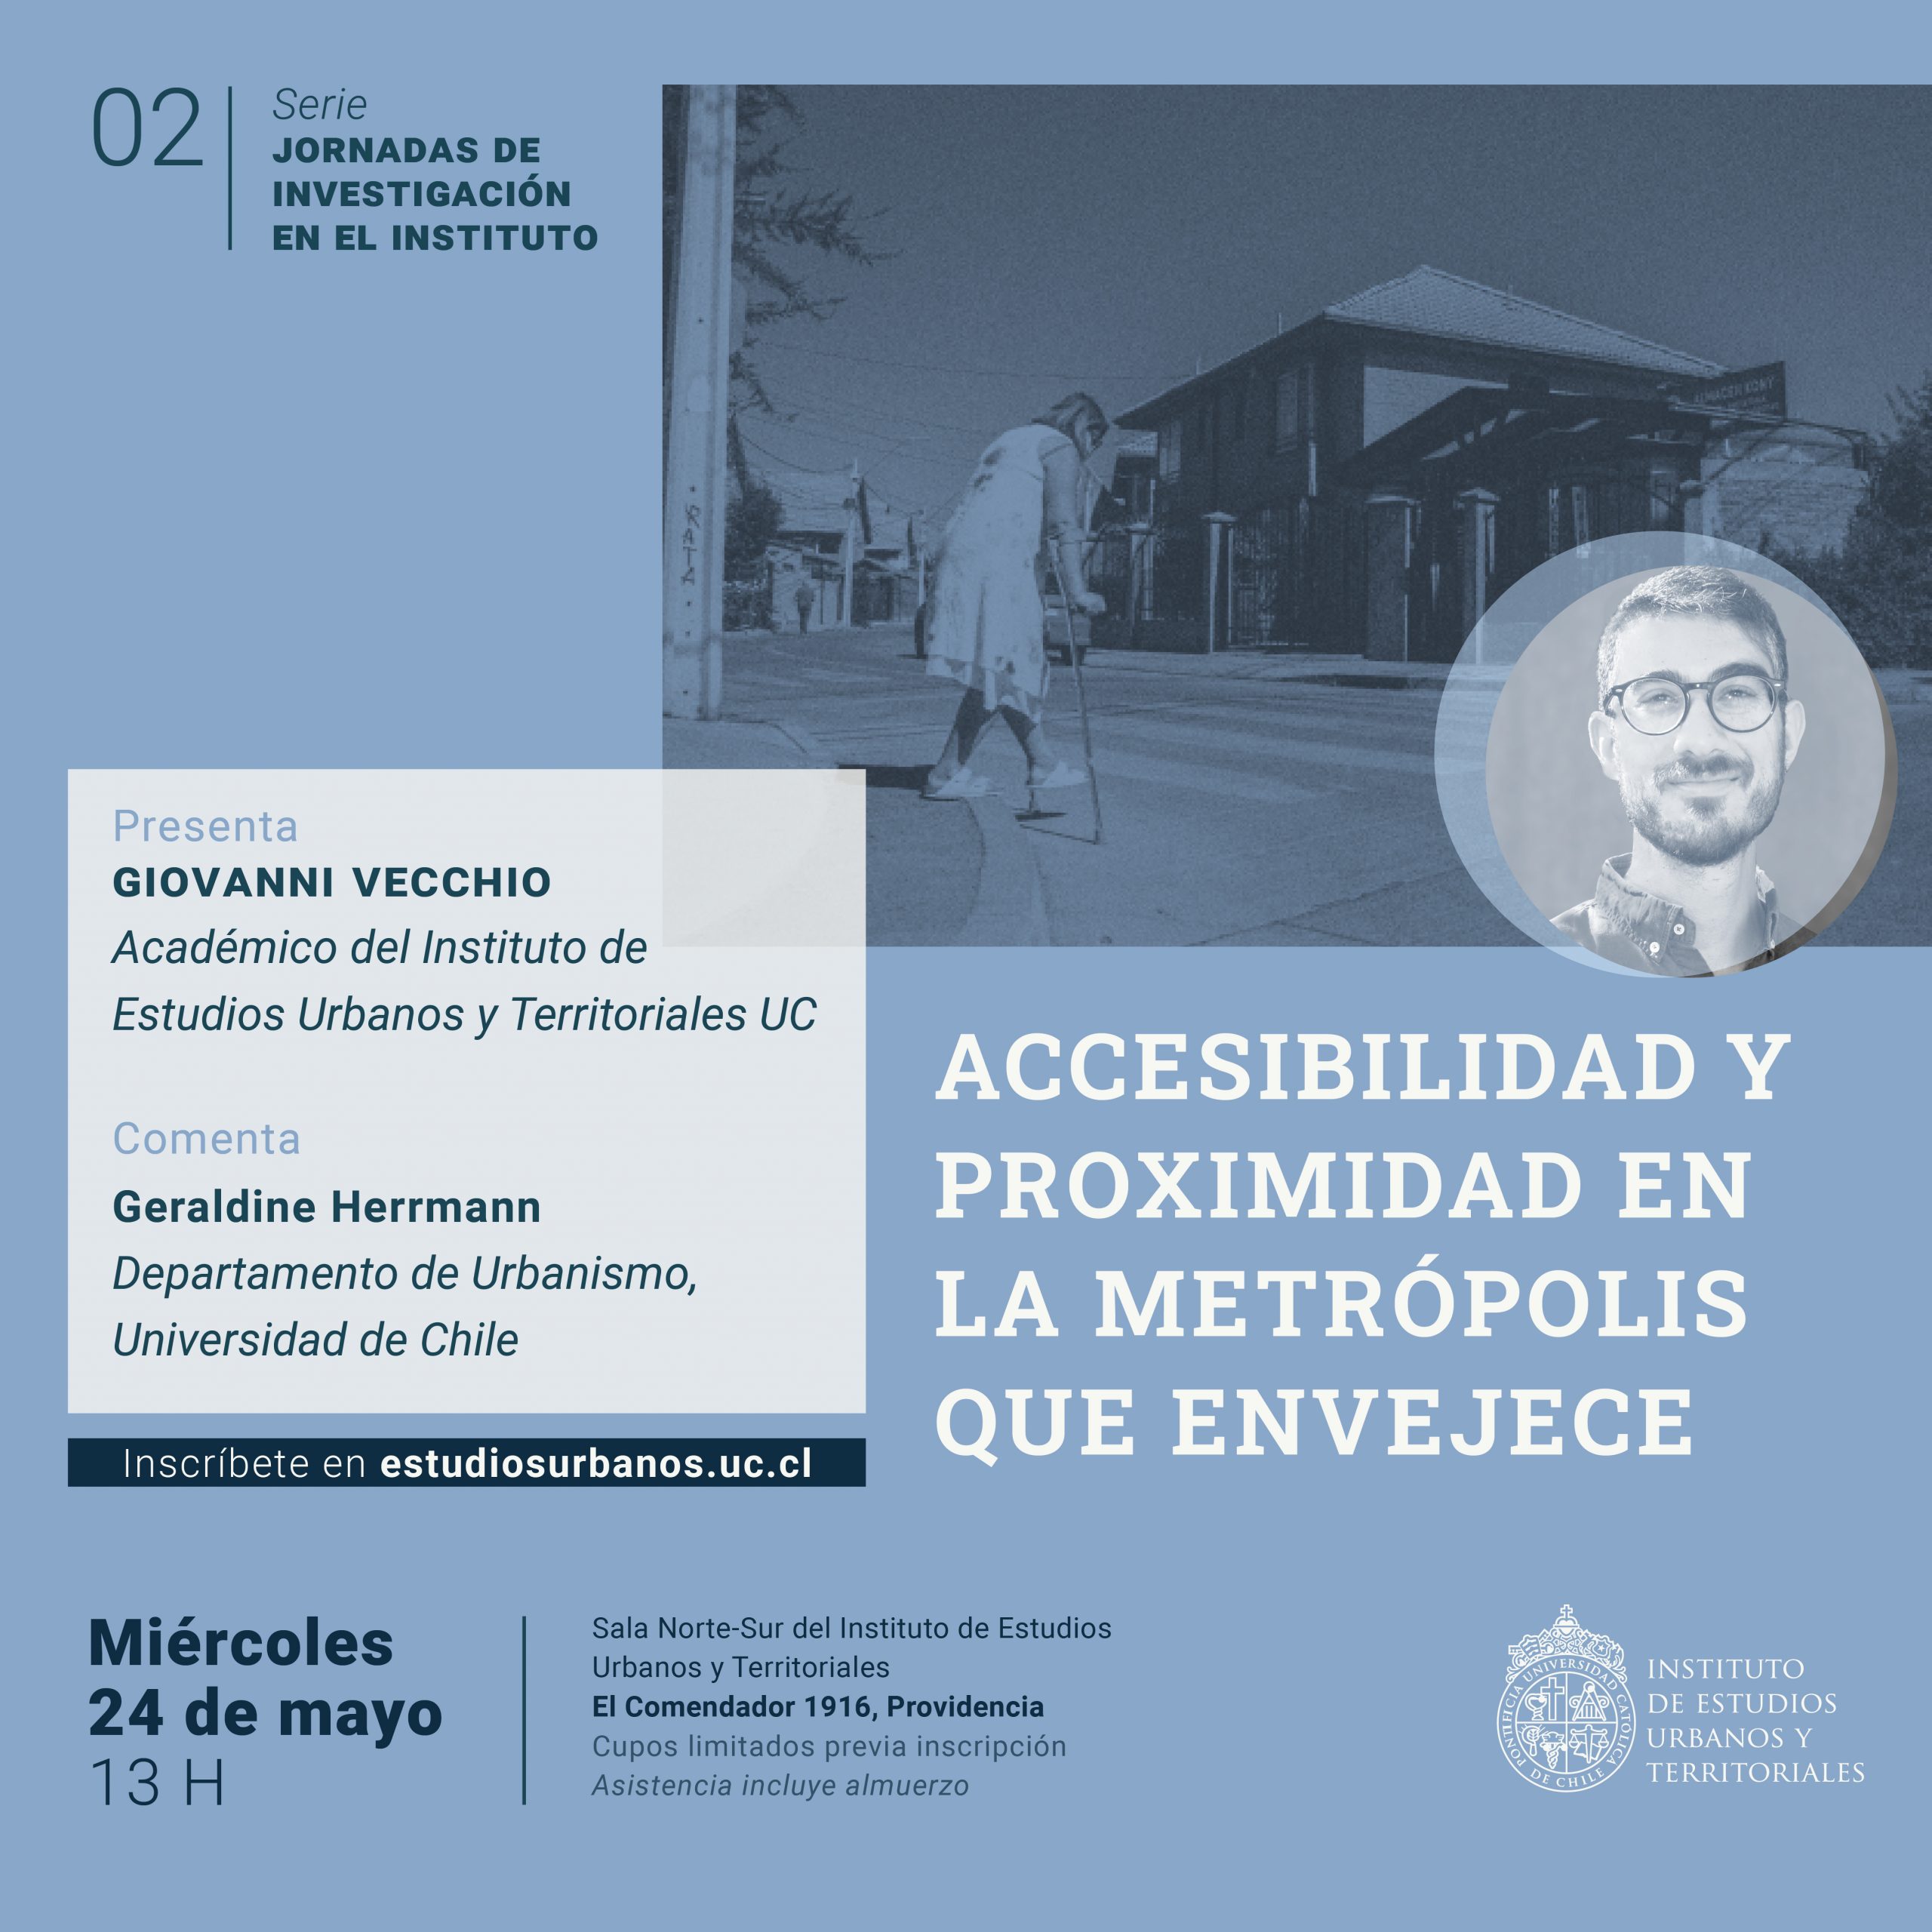 #2 Serie jornadas de investigación en el IEUT | «Accesibilidad y proximidad en la metrópolis que envejece», expone Giovanni Vecchio